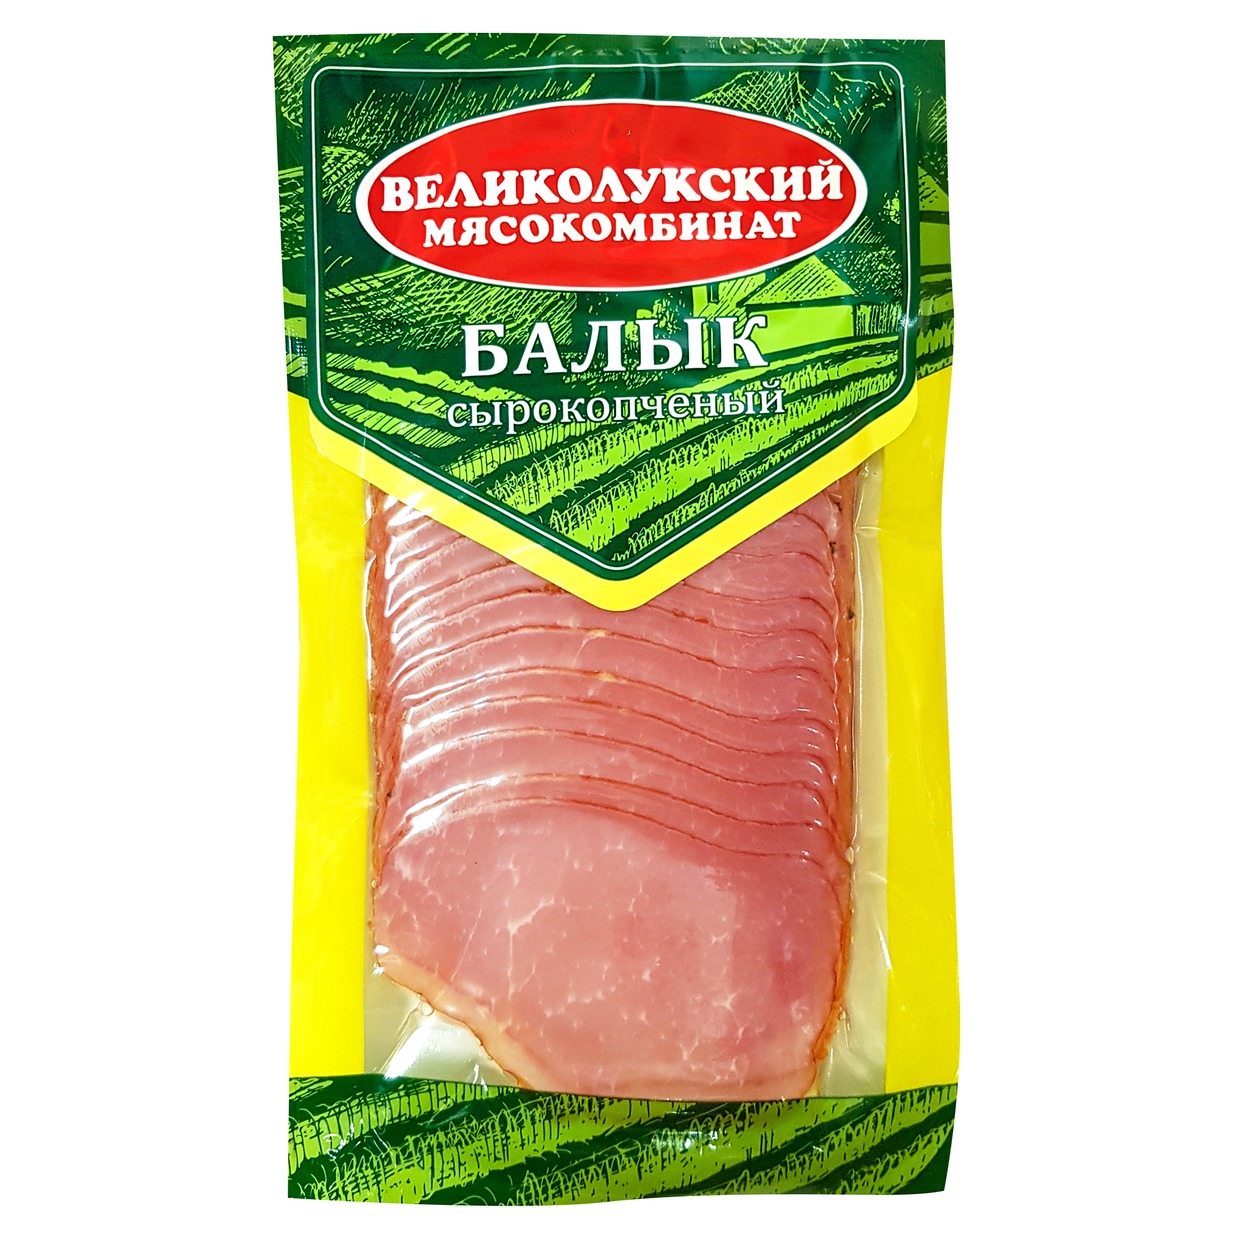 Продукт из мяса свинины кат. А, Балык свиной сырокопченый, 150 гр. нарезка по акции в Пятерочке